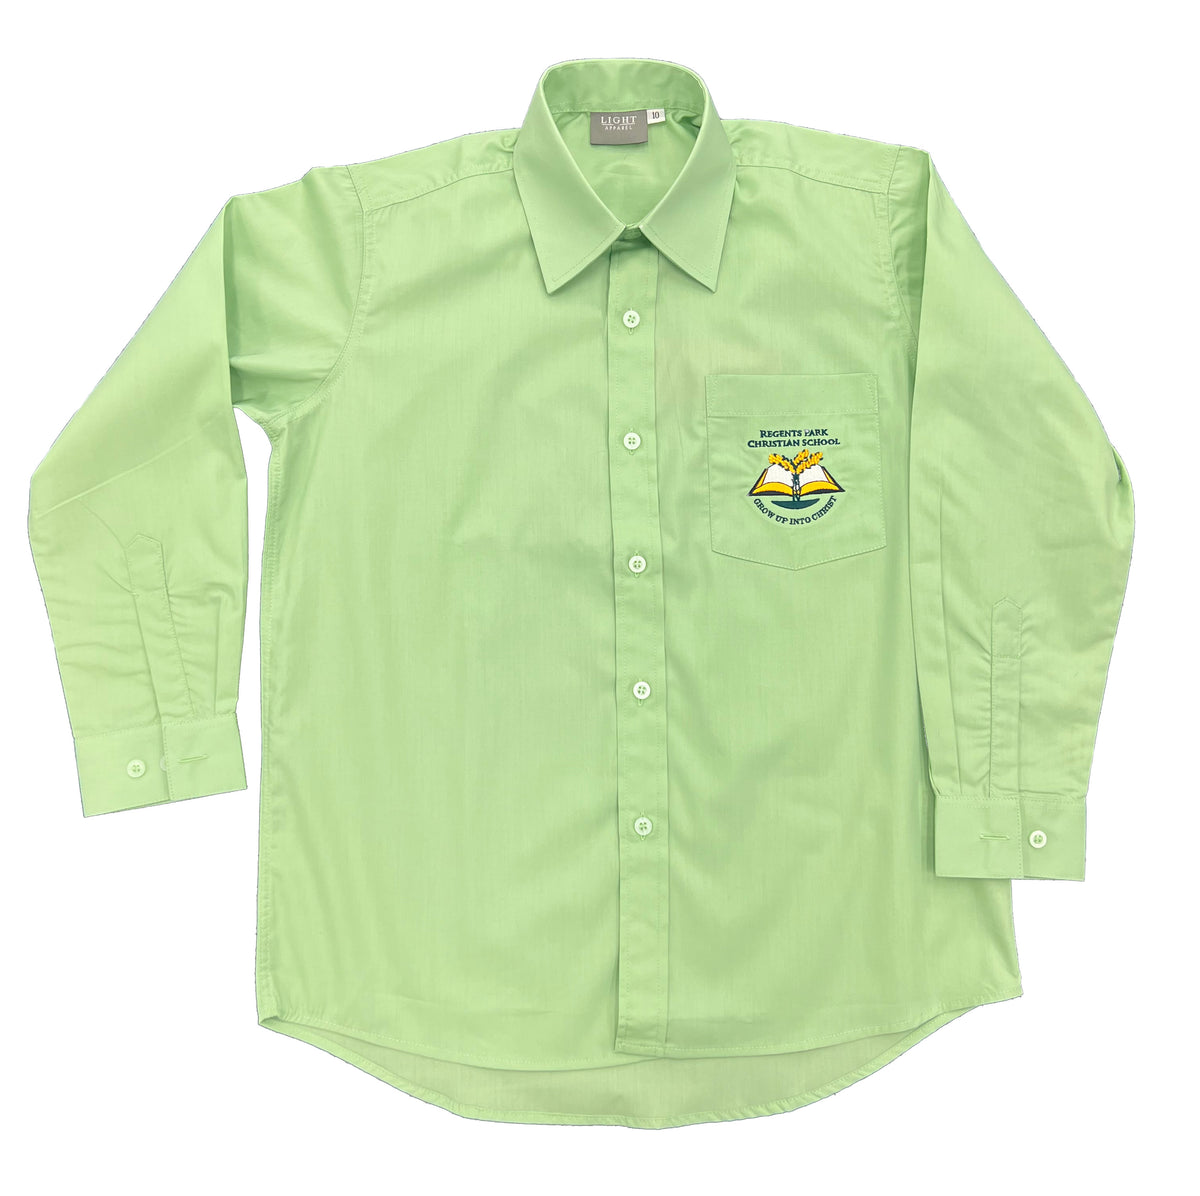 Boys Junior long sleeve green shirt – RPCS Uniform Shop